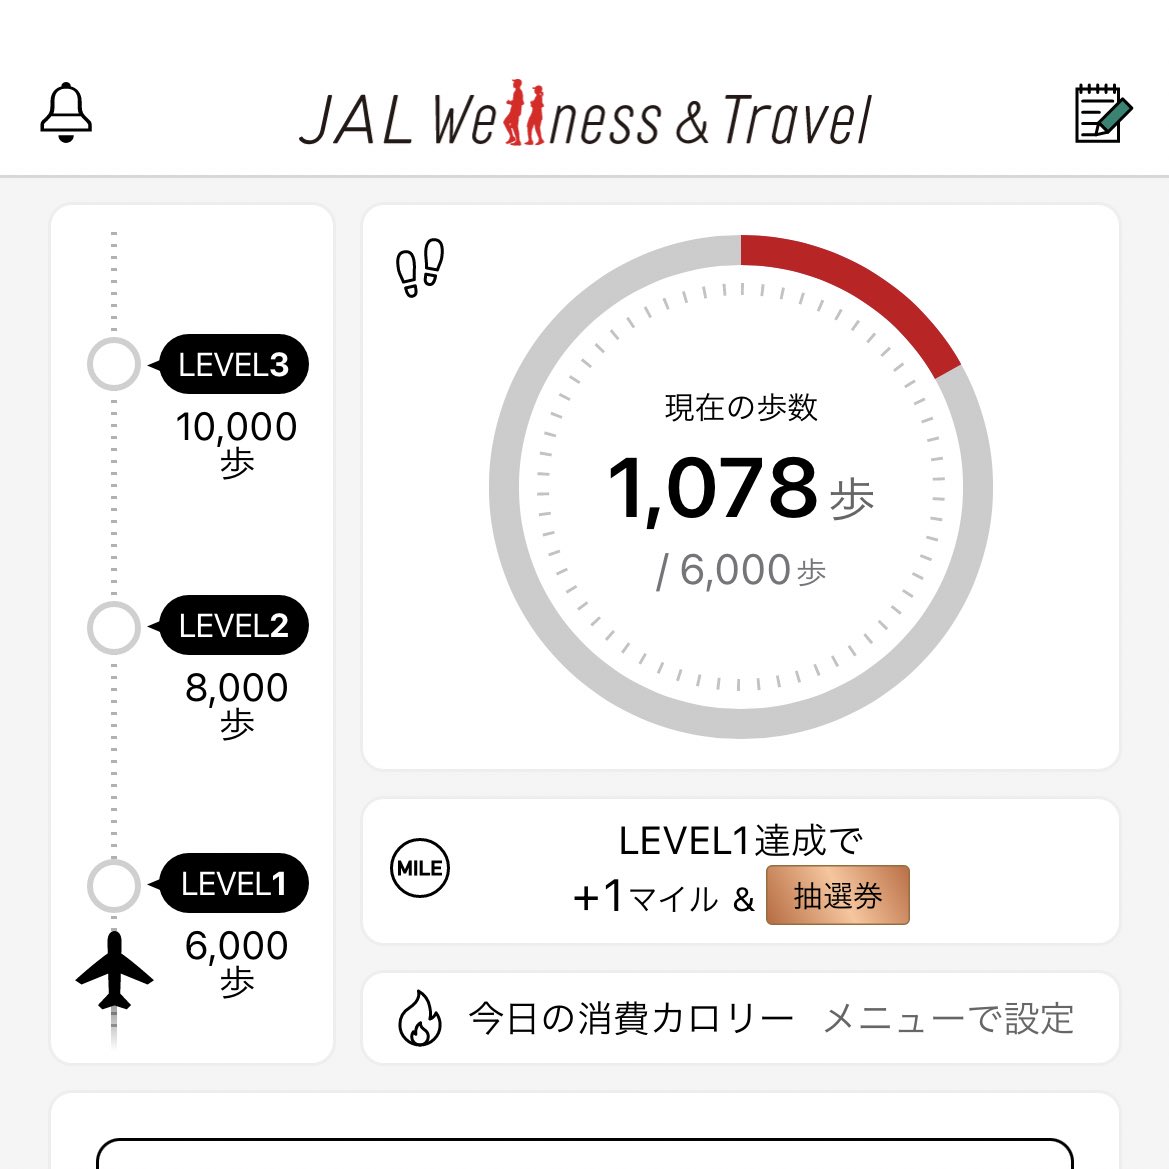 JALでマイル貯めてるんだけど
歩いてるだけでマイルもらえるから、ダイエットにもいいしマイルも貯まるから一石二鳥👌✨